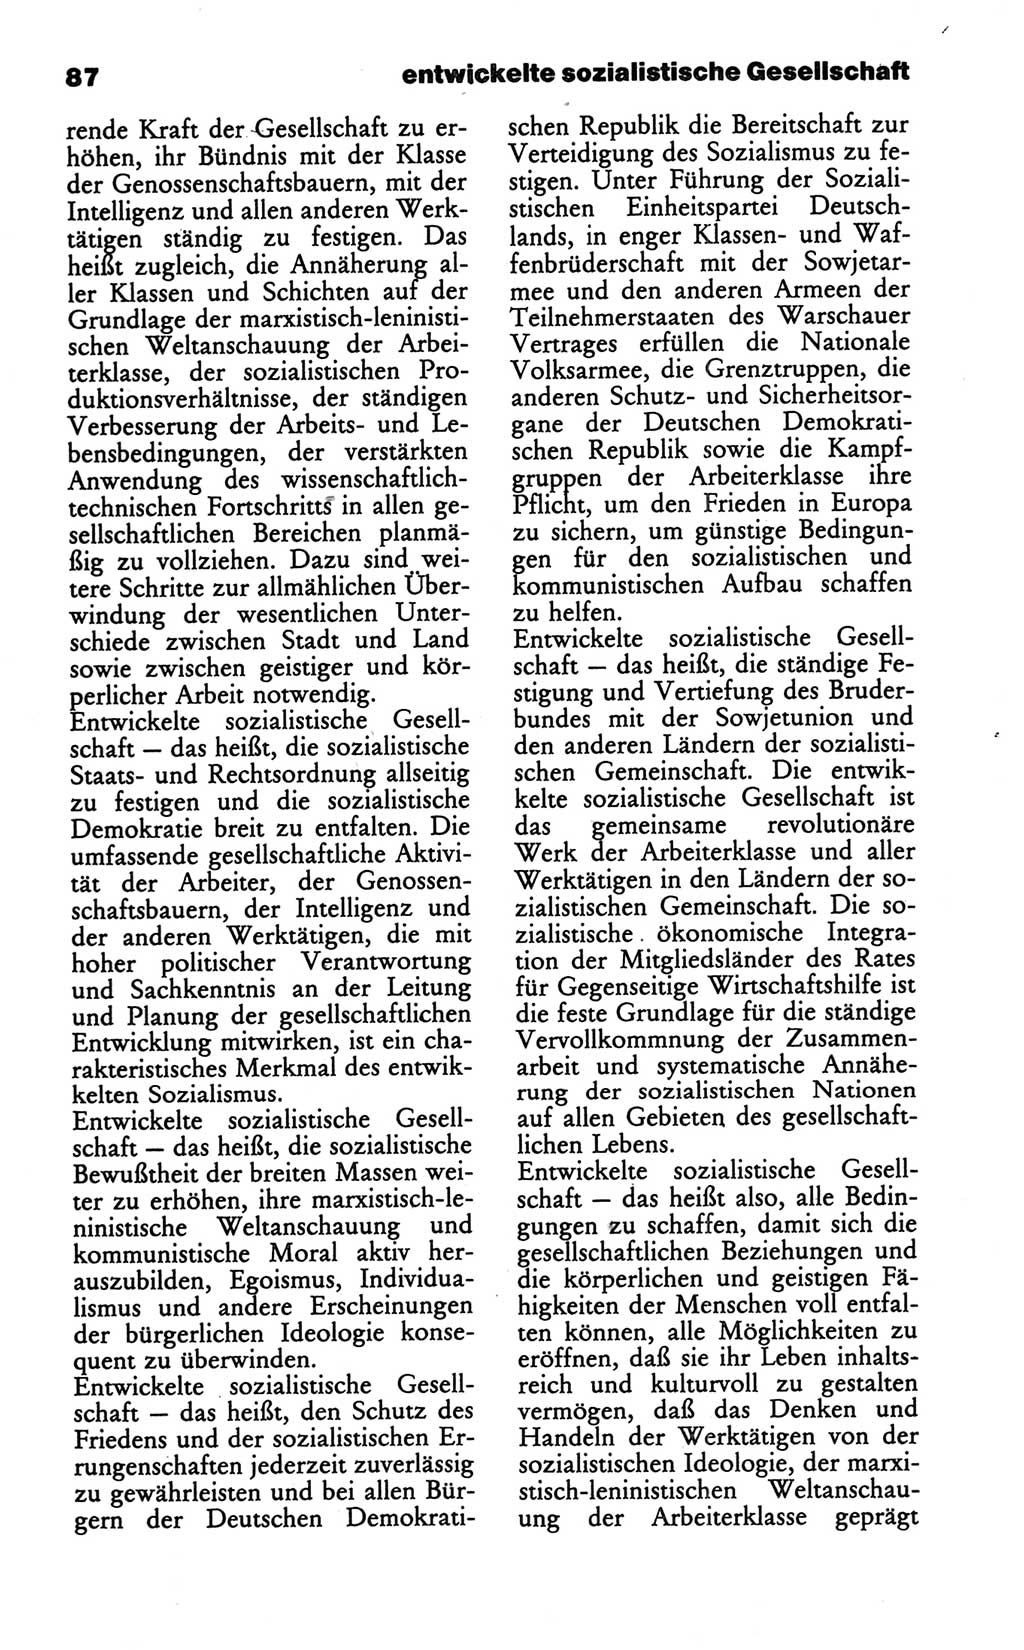 Wörterbuch des wissenschaftlichen Kommunismus [Deutsche Demokratische Republik (DDR)] 1986, Seite 87 (Wb. wiss. Komm. DDR 1986, S. 87)